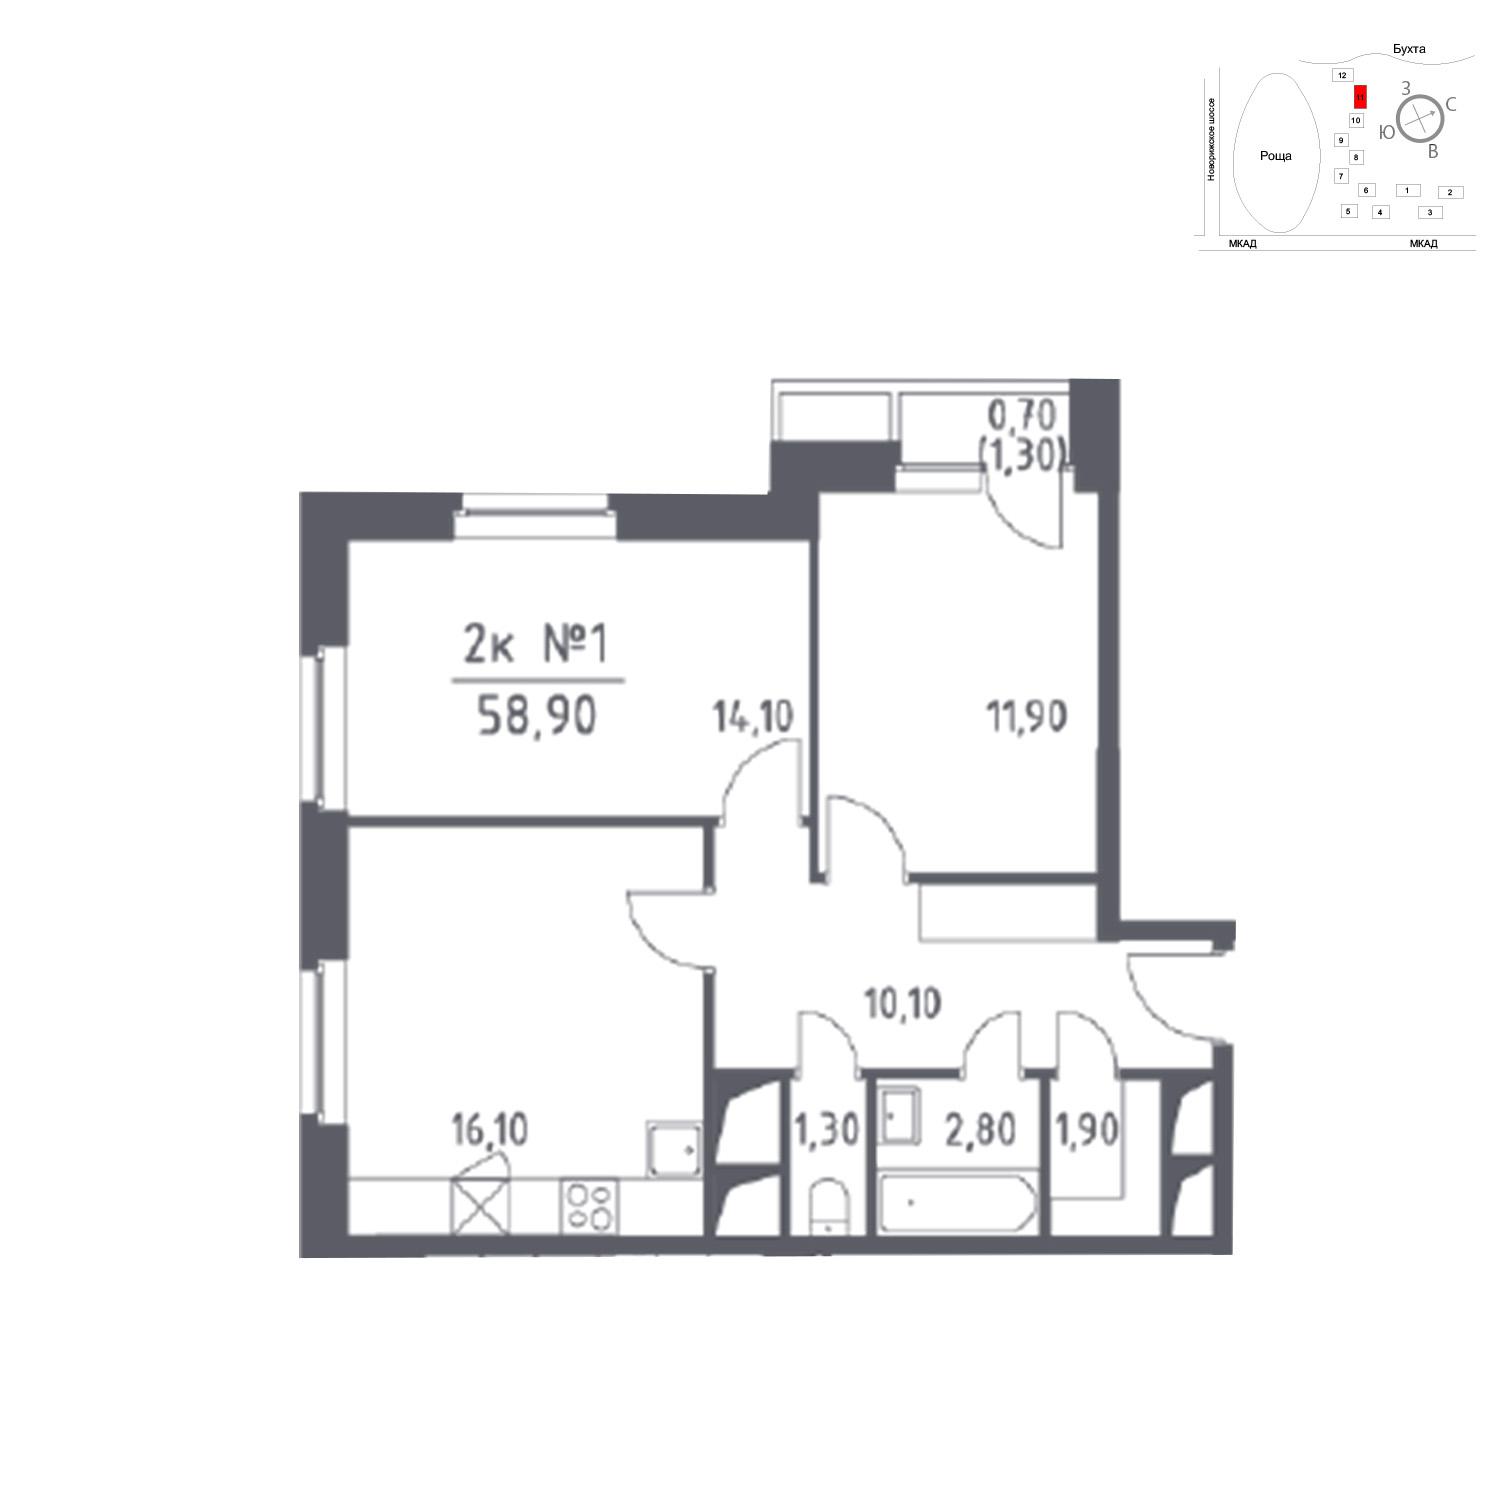 Продаётся 2-комнатная квартира в новостройке 58.9 кв.м. этаж 20/33 за 0 руб 